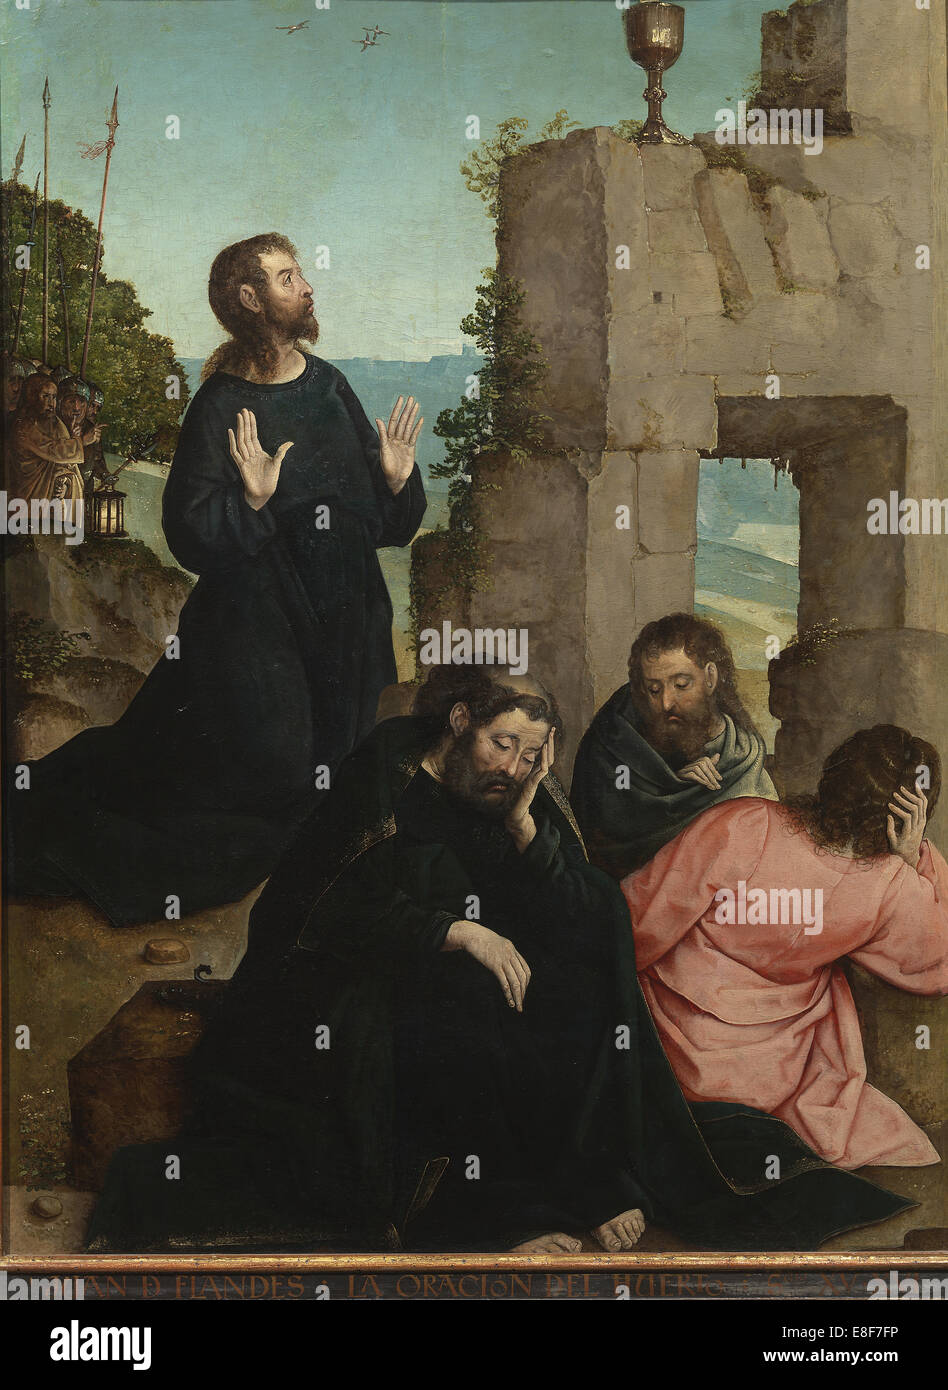 The Agony in the Garden. Artist: Juan de Flandes (ca. 1465-1519) Stock Photo